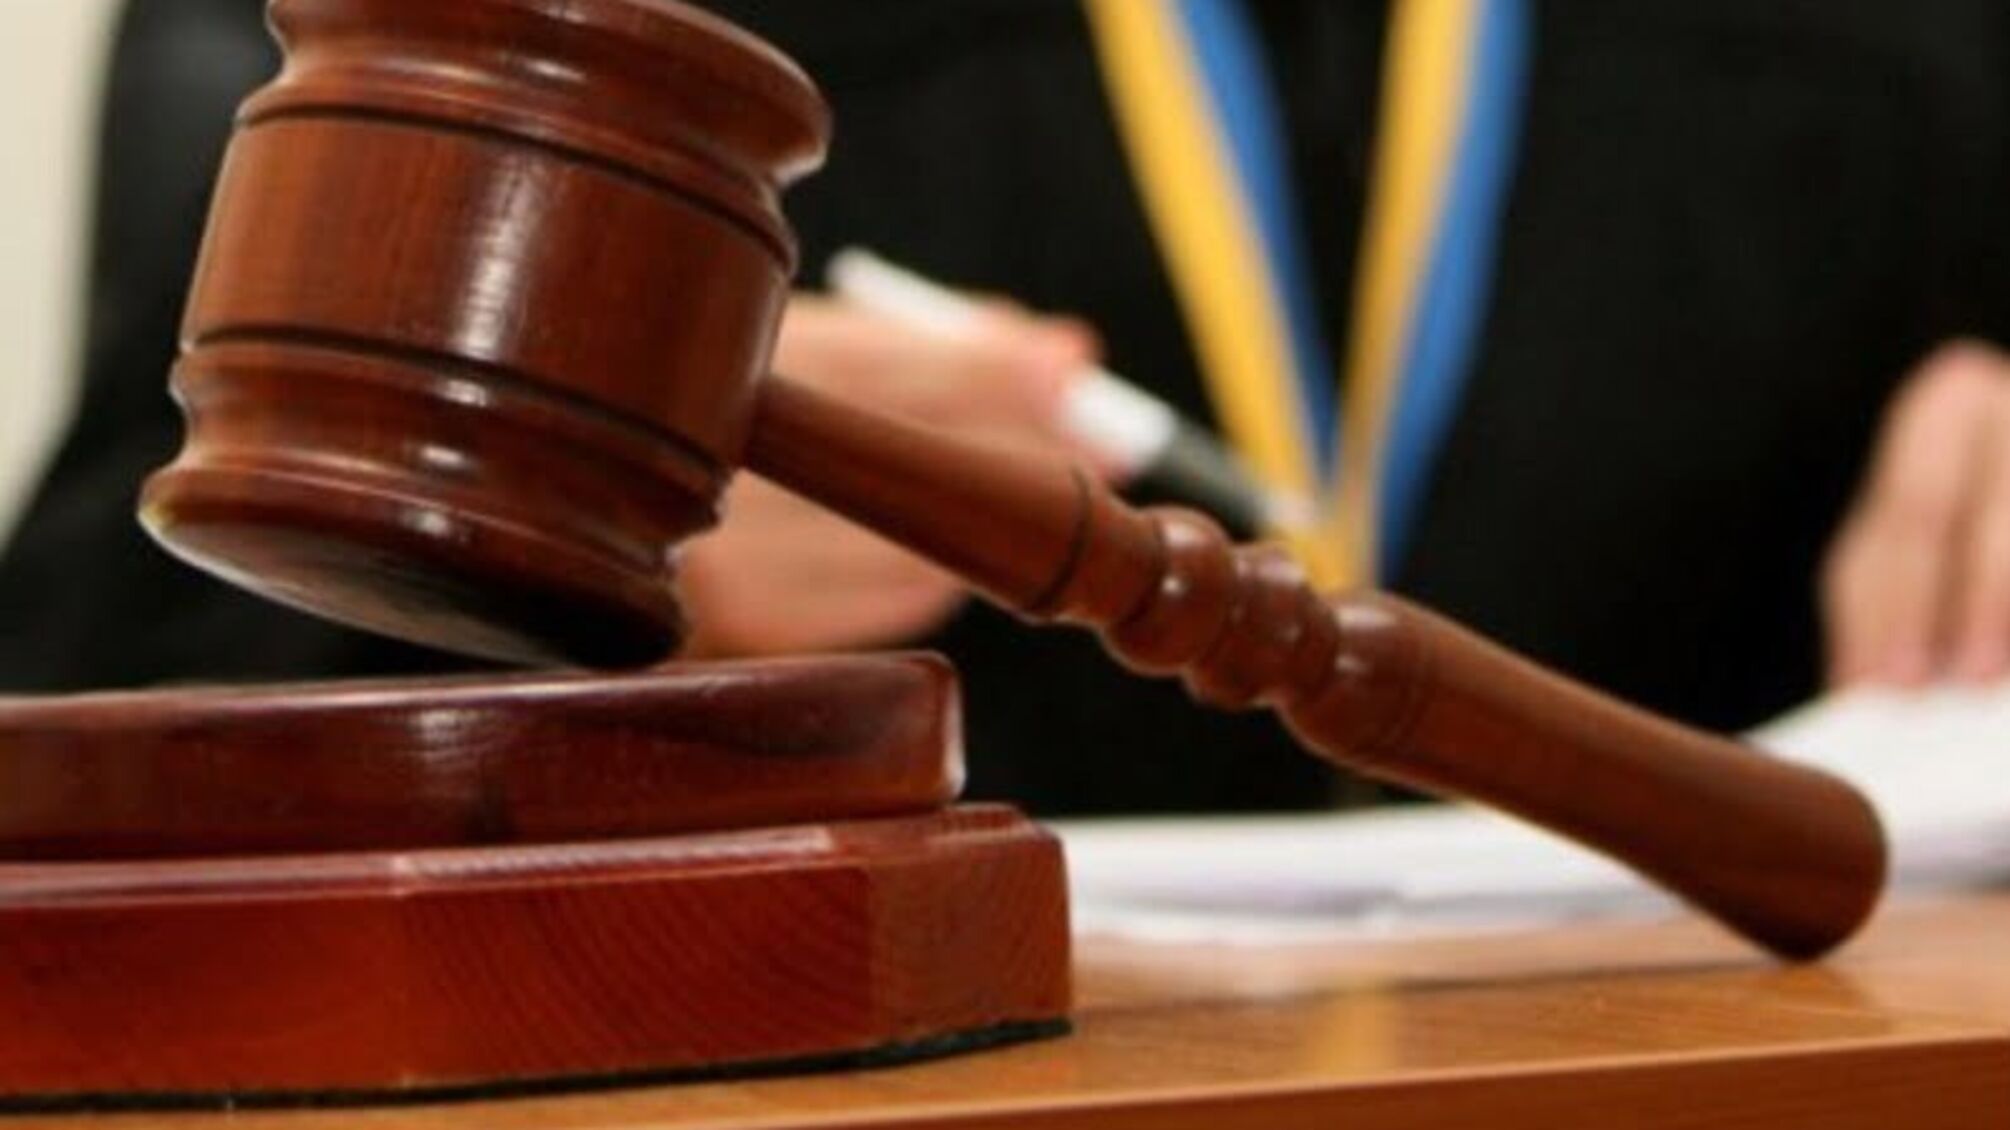 САП направила до суду справу щодо судді з Полтави